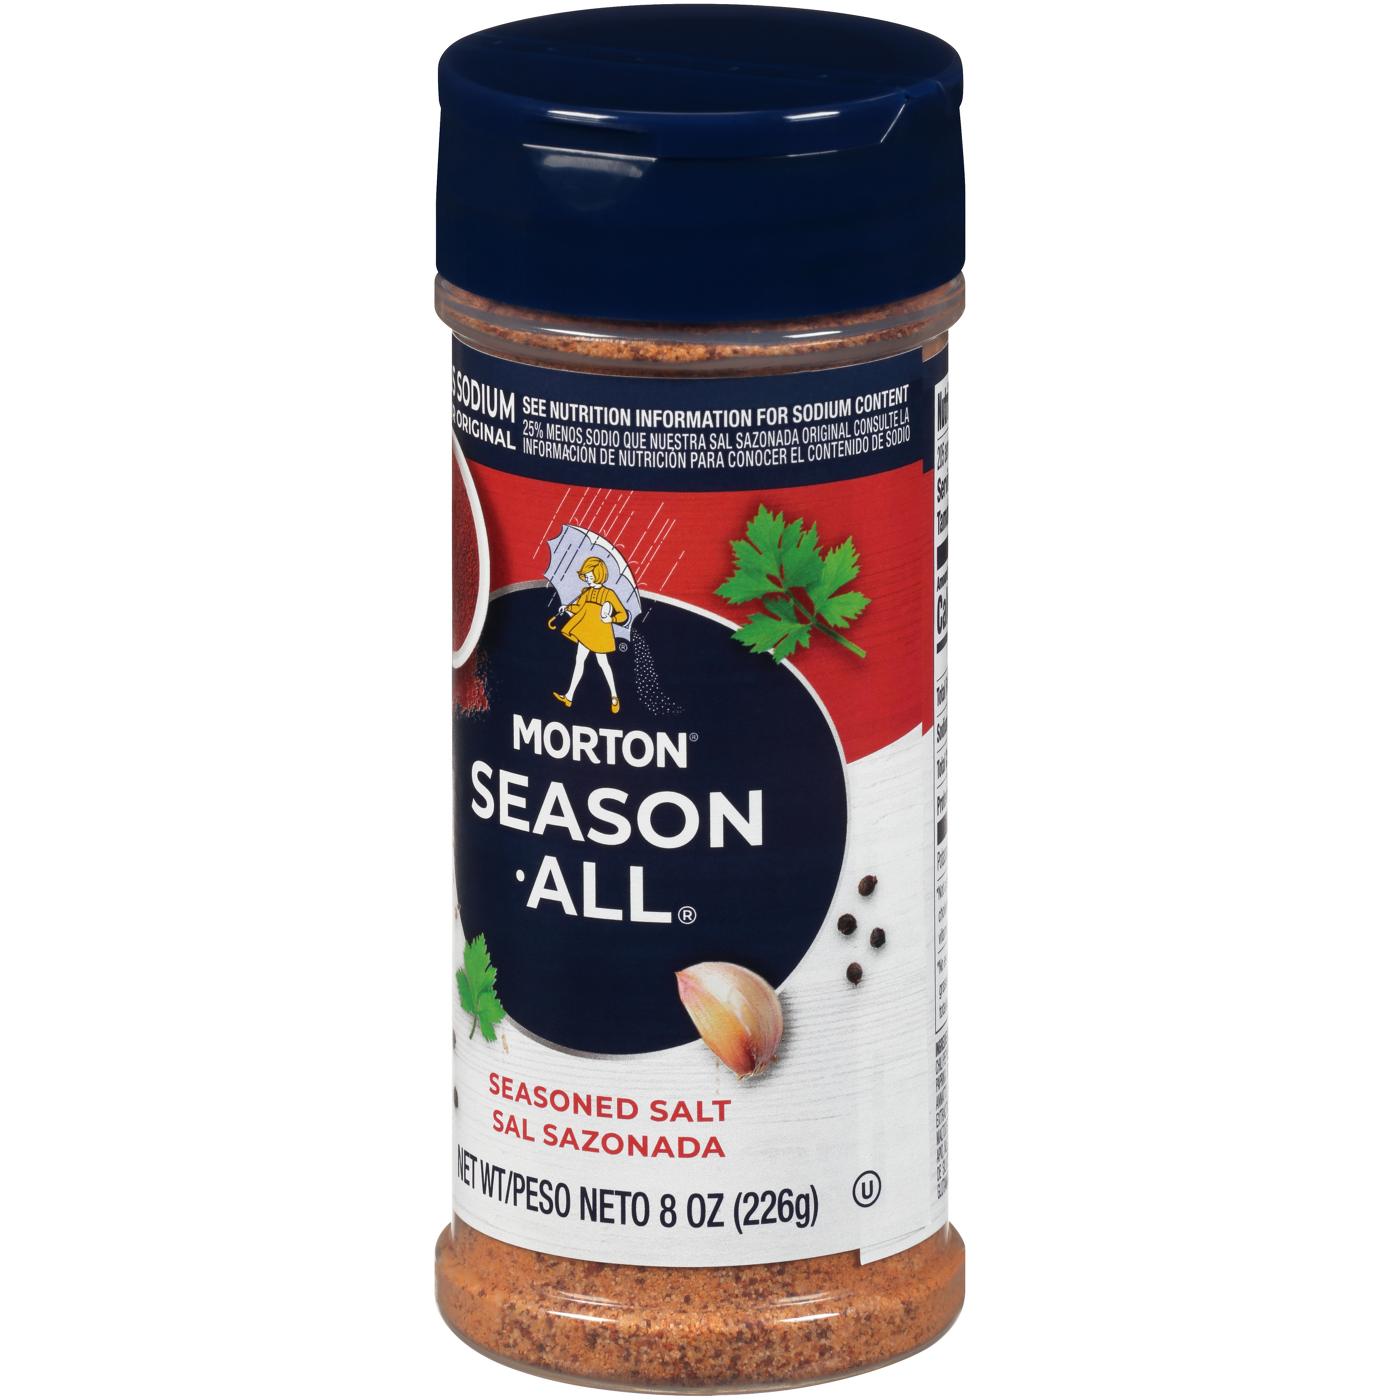 Buy Morton Season All Seasoned Salt At Taste America